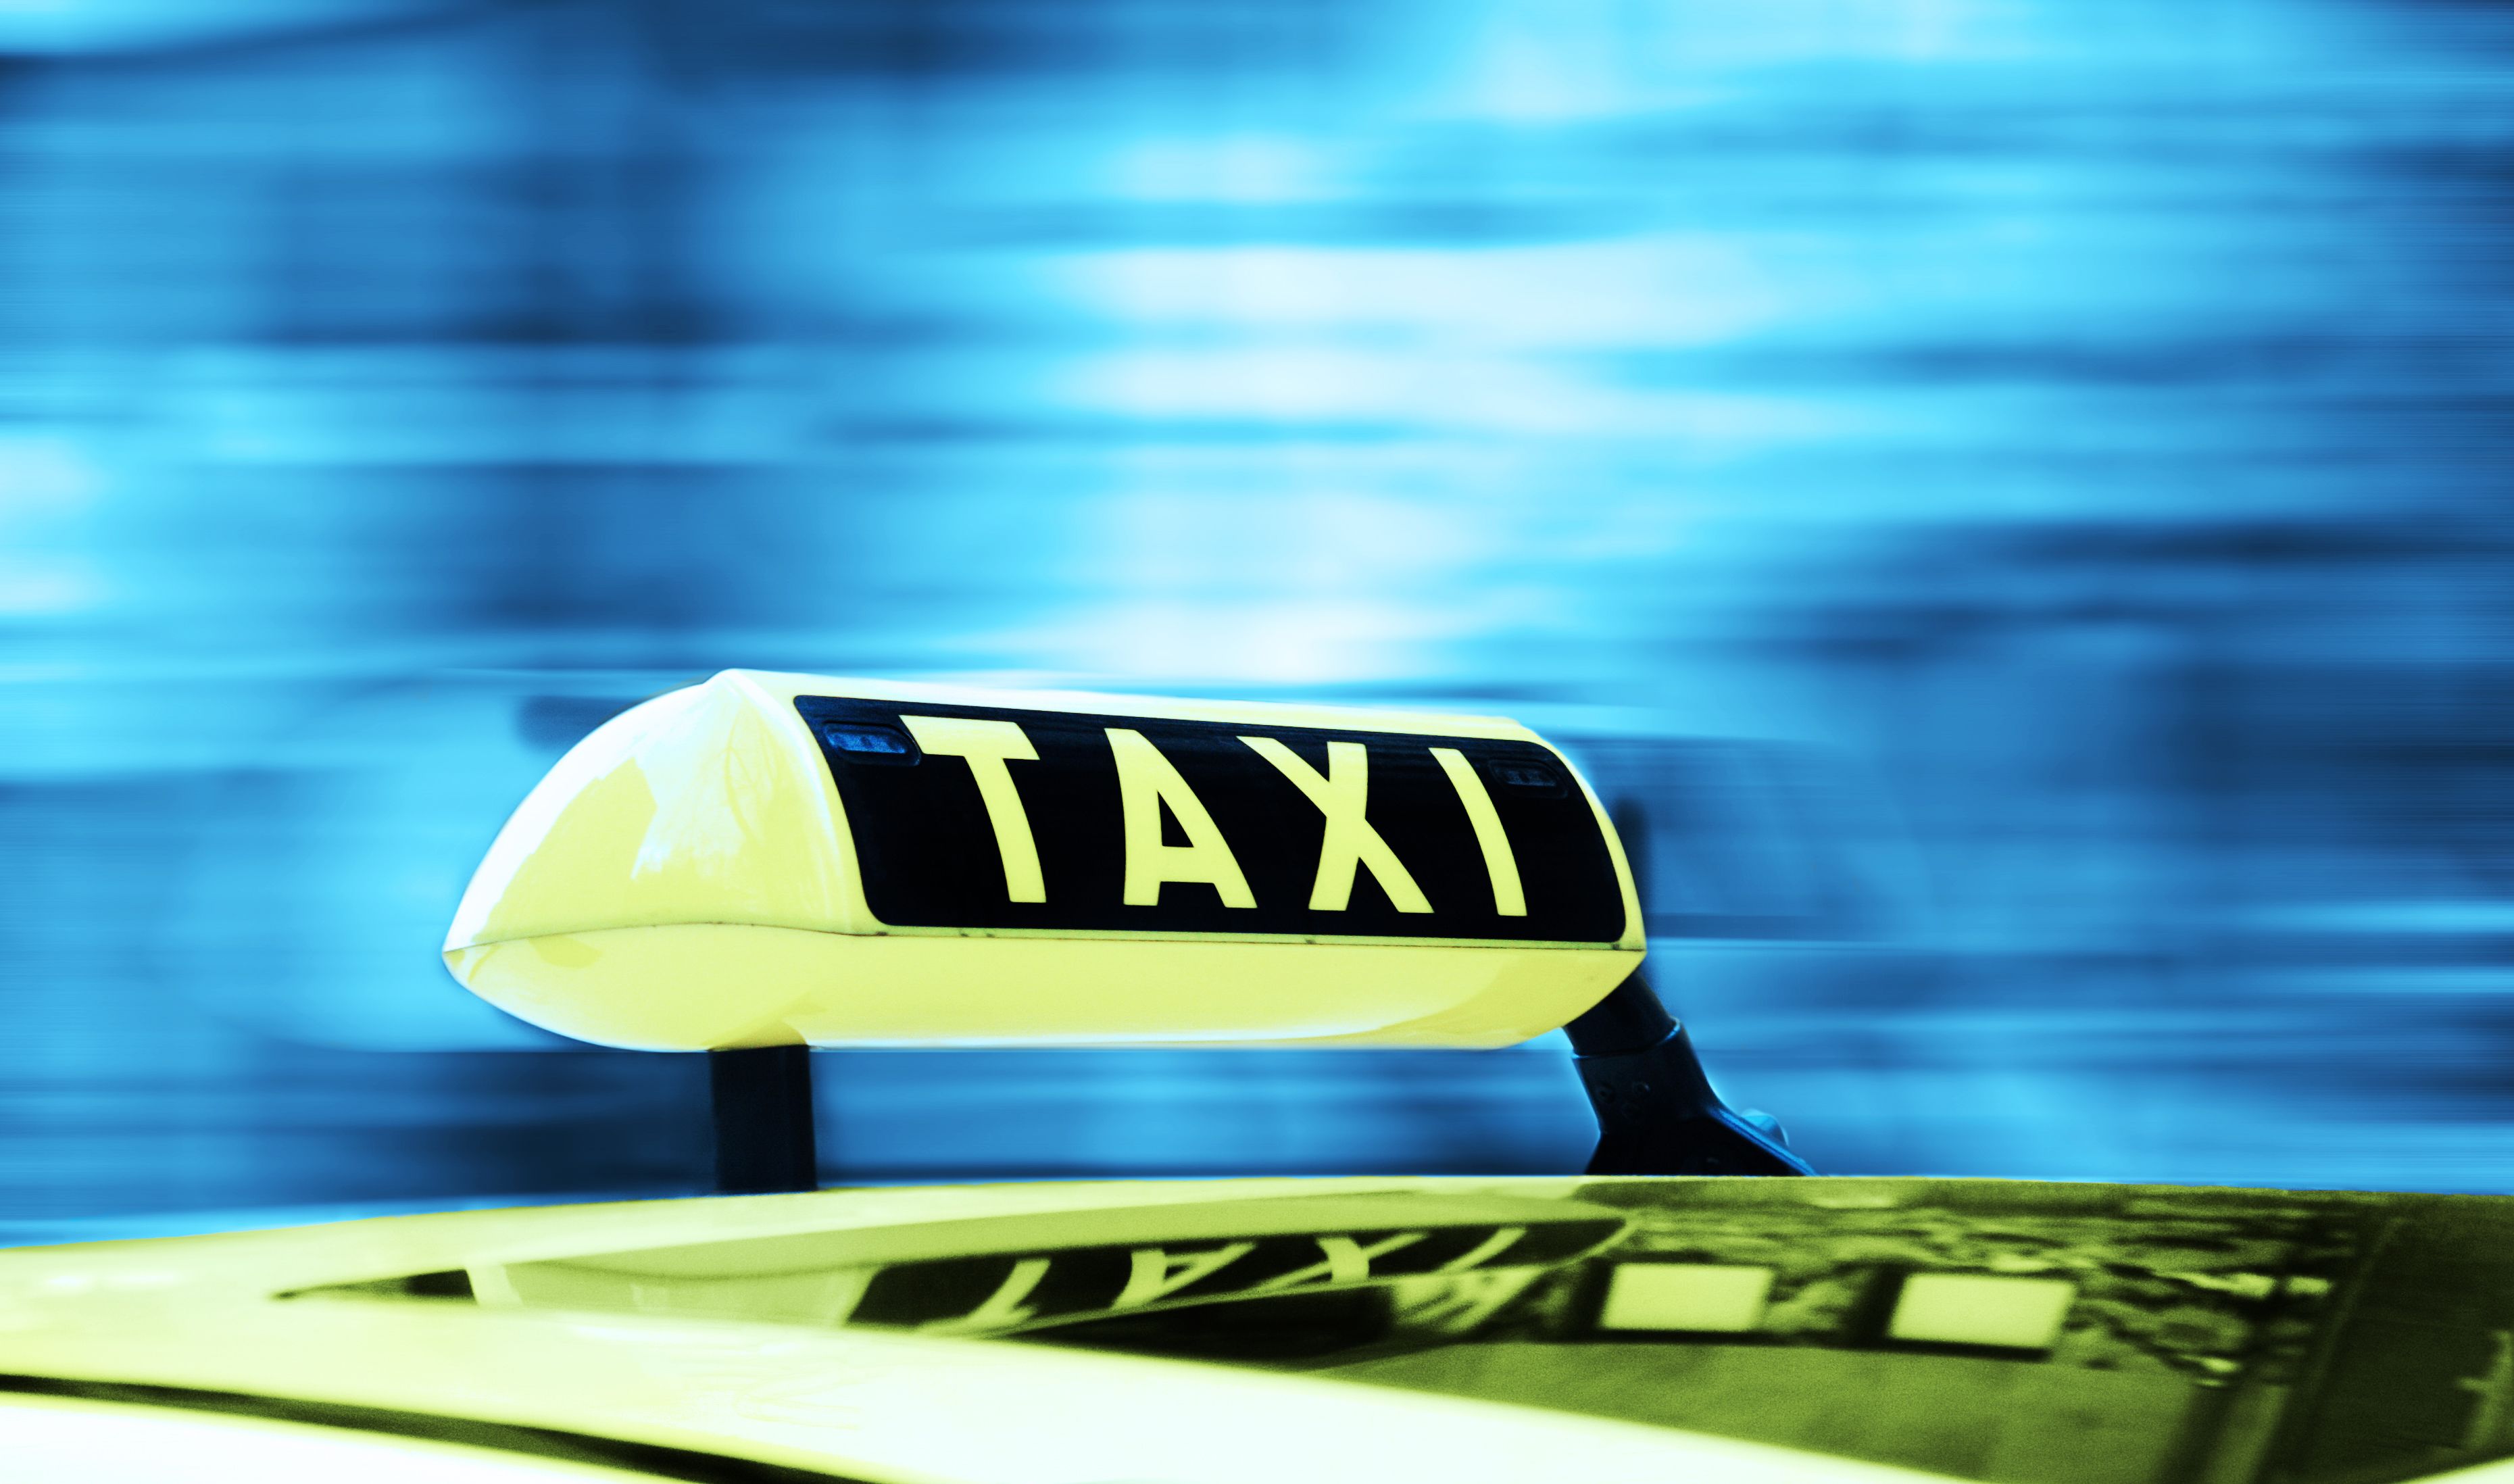 Taxivervoer